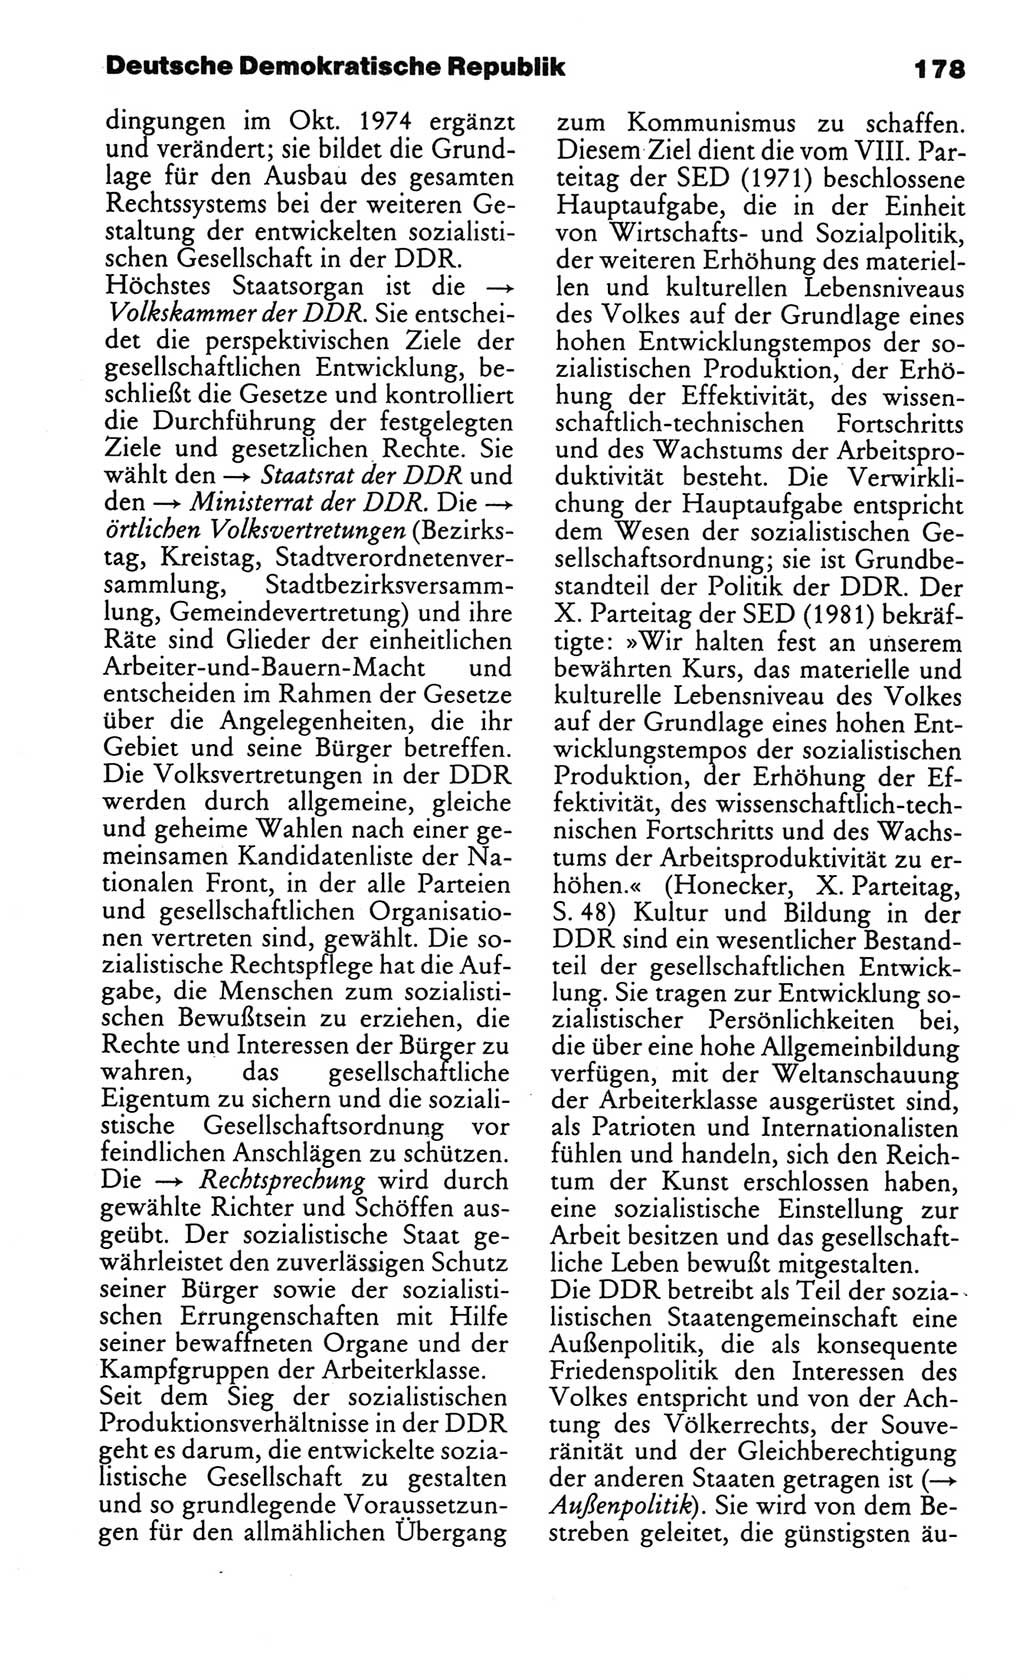 Kleines politisches Wörterbuch [Deutsche Demokratische Republik (DDR)] 1986, Seite 178 (Kl. pol. Wb. DDR 1986, S. 178)